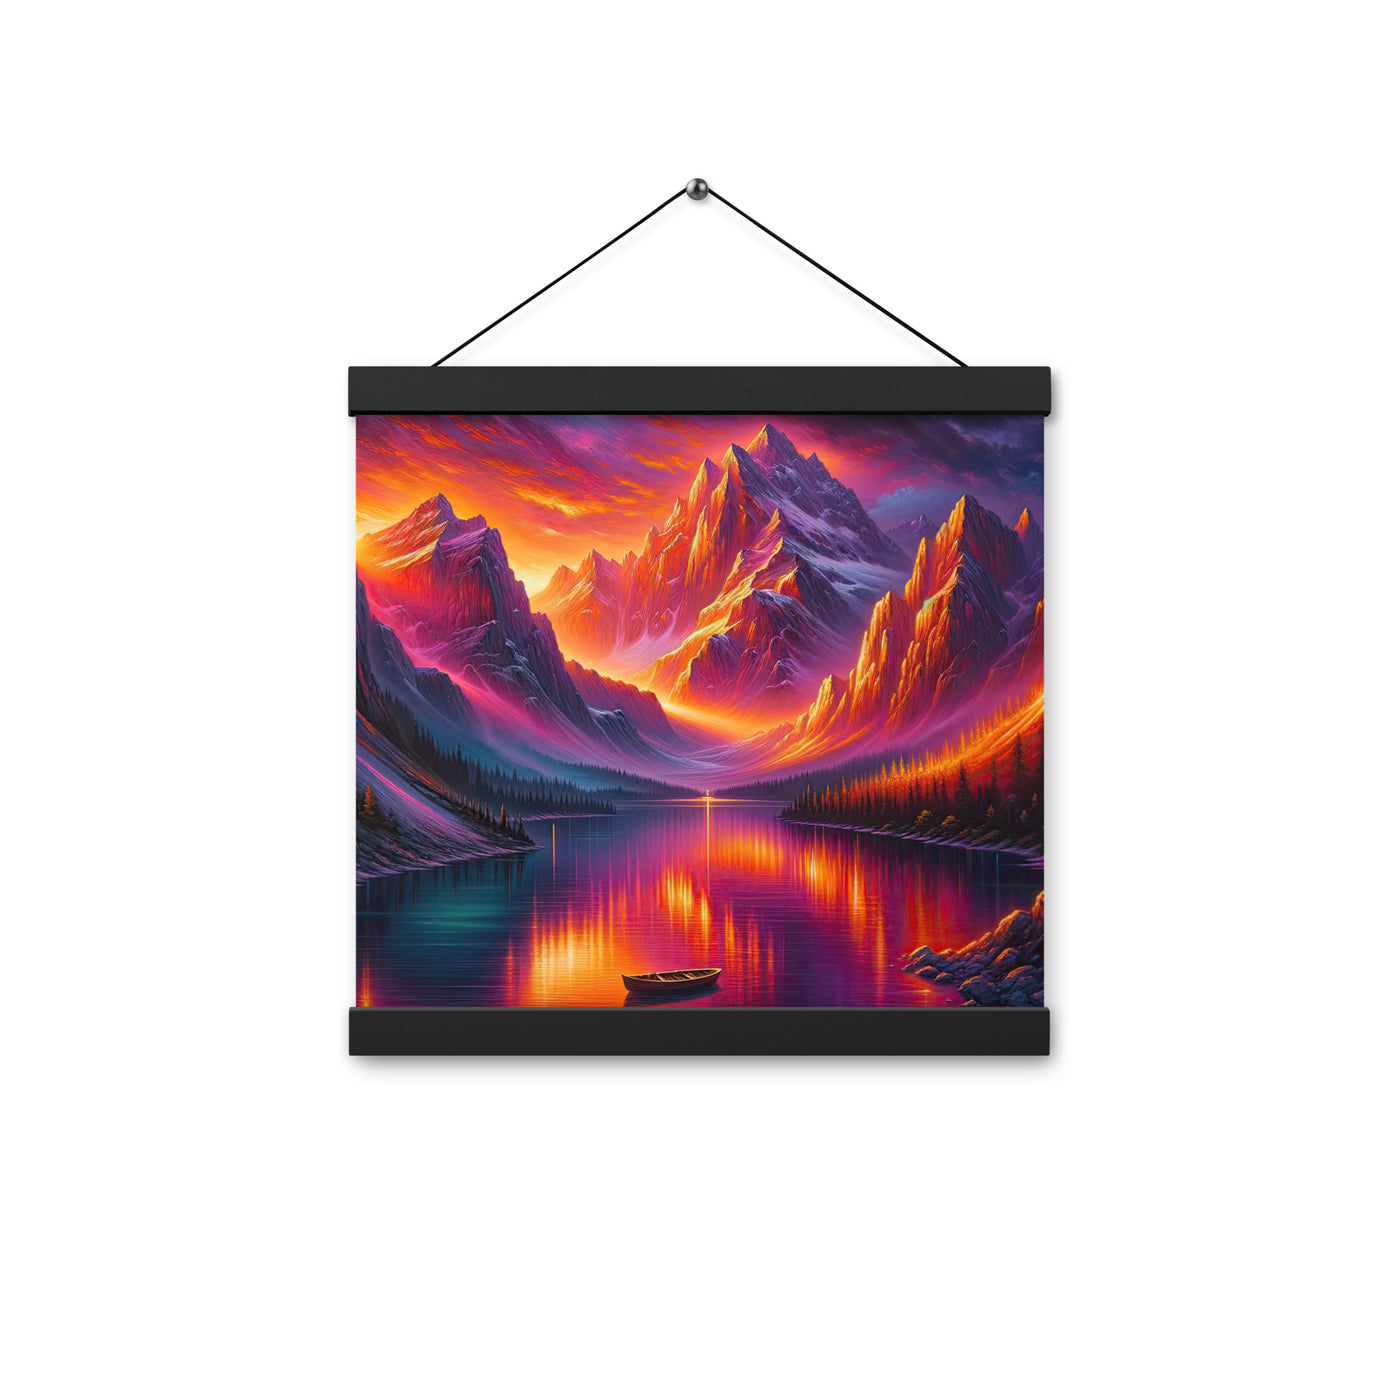 Ölgemälde eines Bootes auf einem Bergsee bei Sonnenuntergang, lebendige Orange-Lila Töne - Premium Poster mit Aufhängung berge xxx yyy zzz 30.5 x 30.5 cm